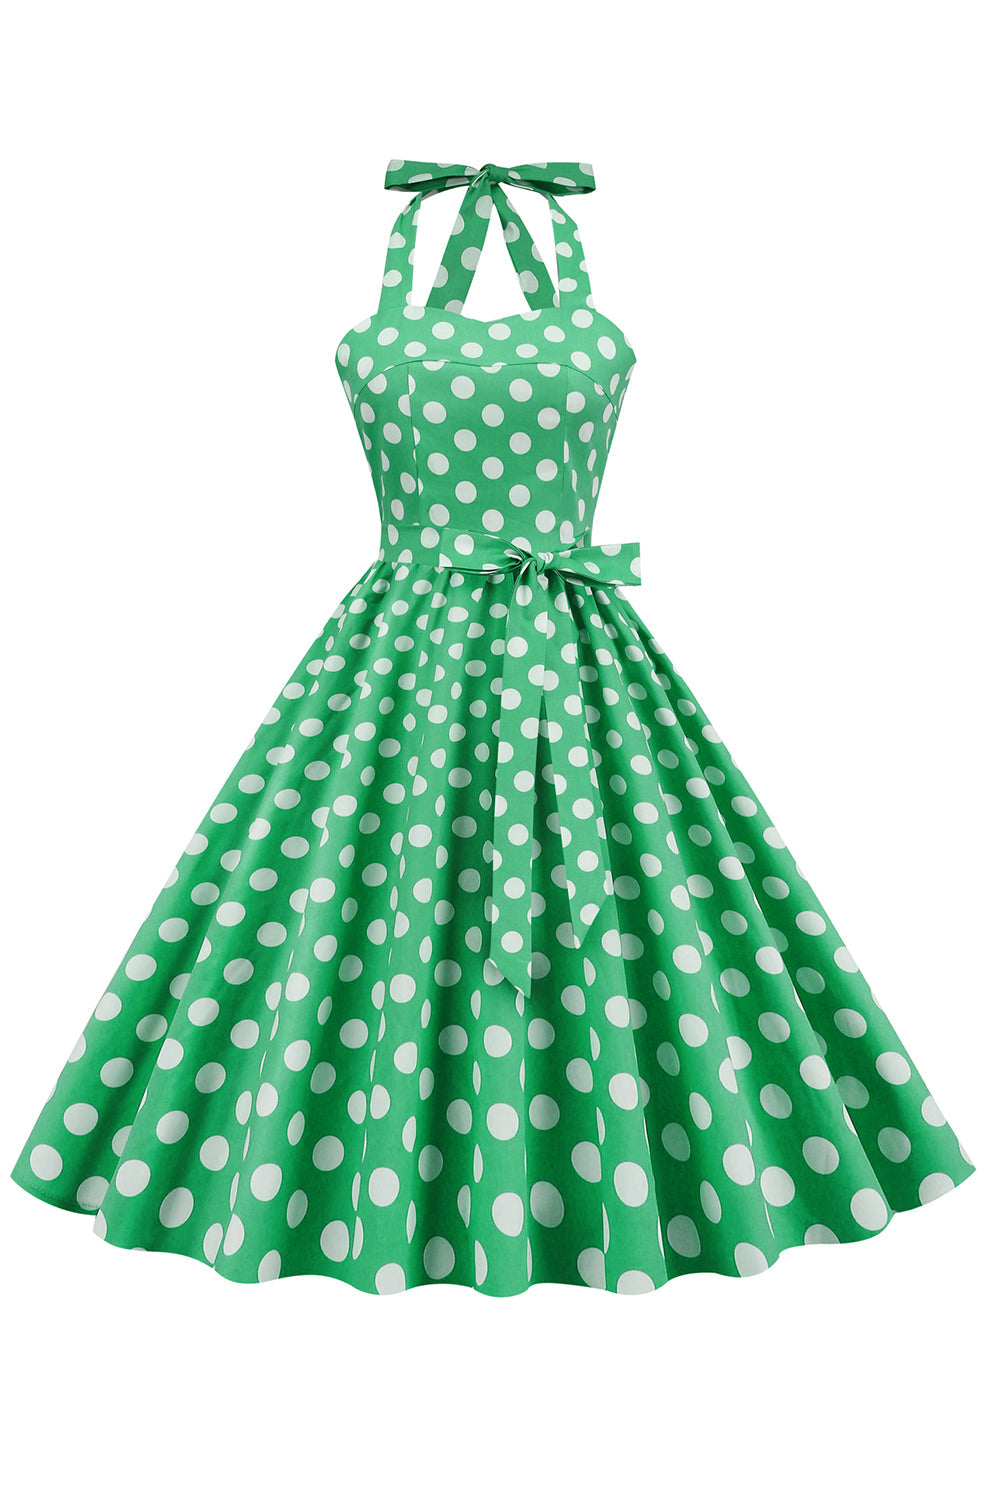 Robe pin up green Polka Dots années 1950